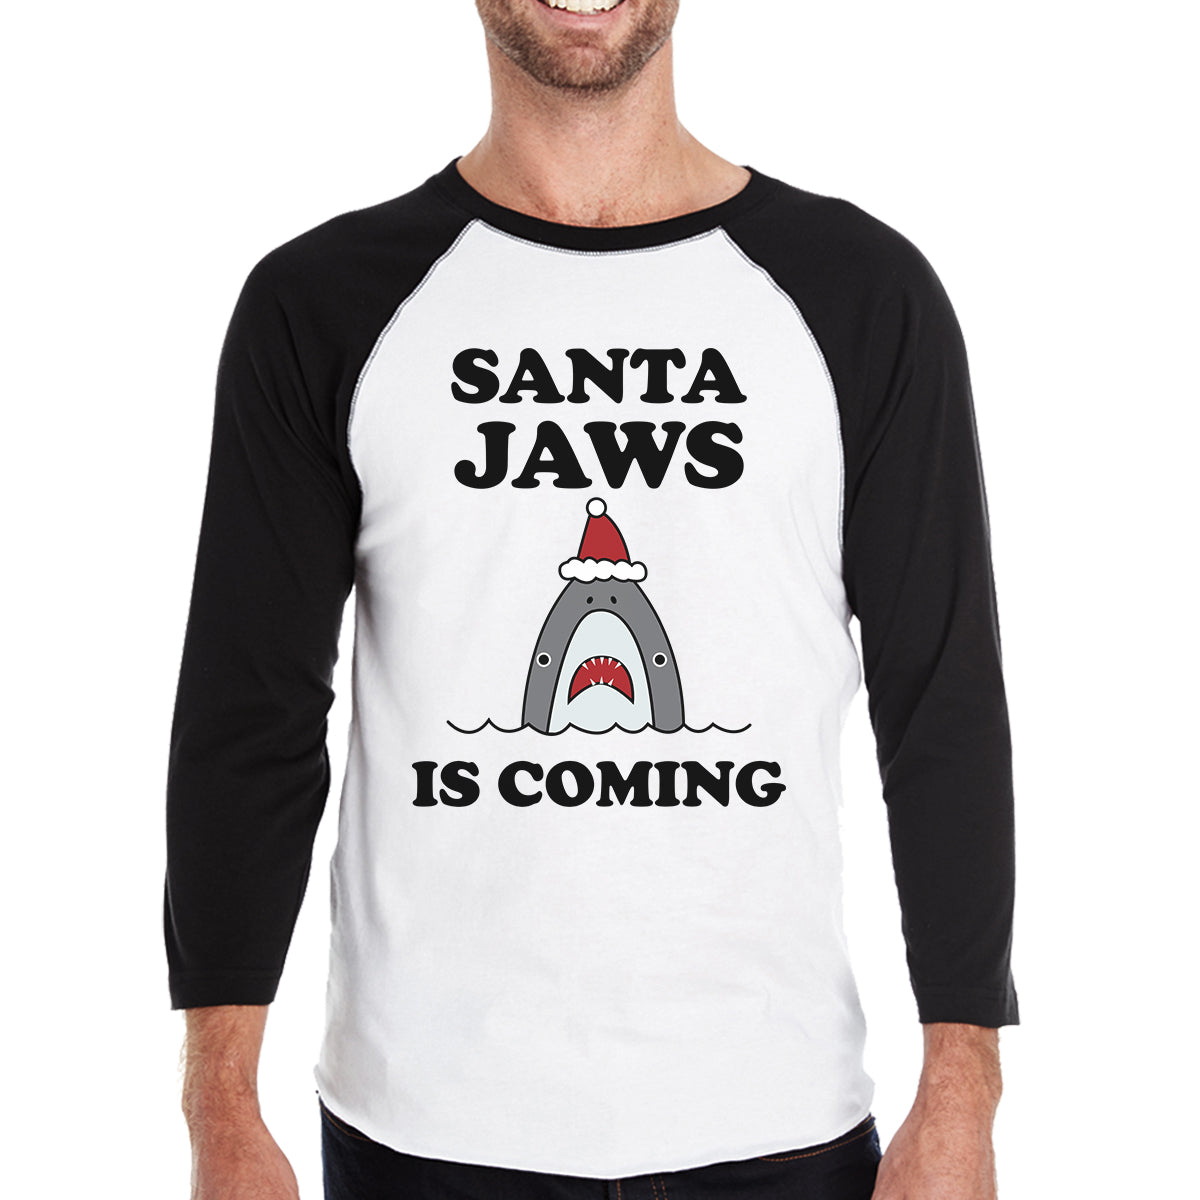 Santa Jaws Is Coming Mens Black And White Baseball Shirt